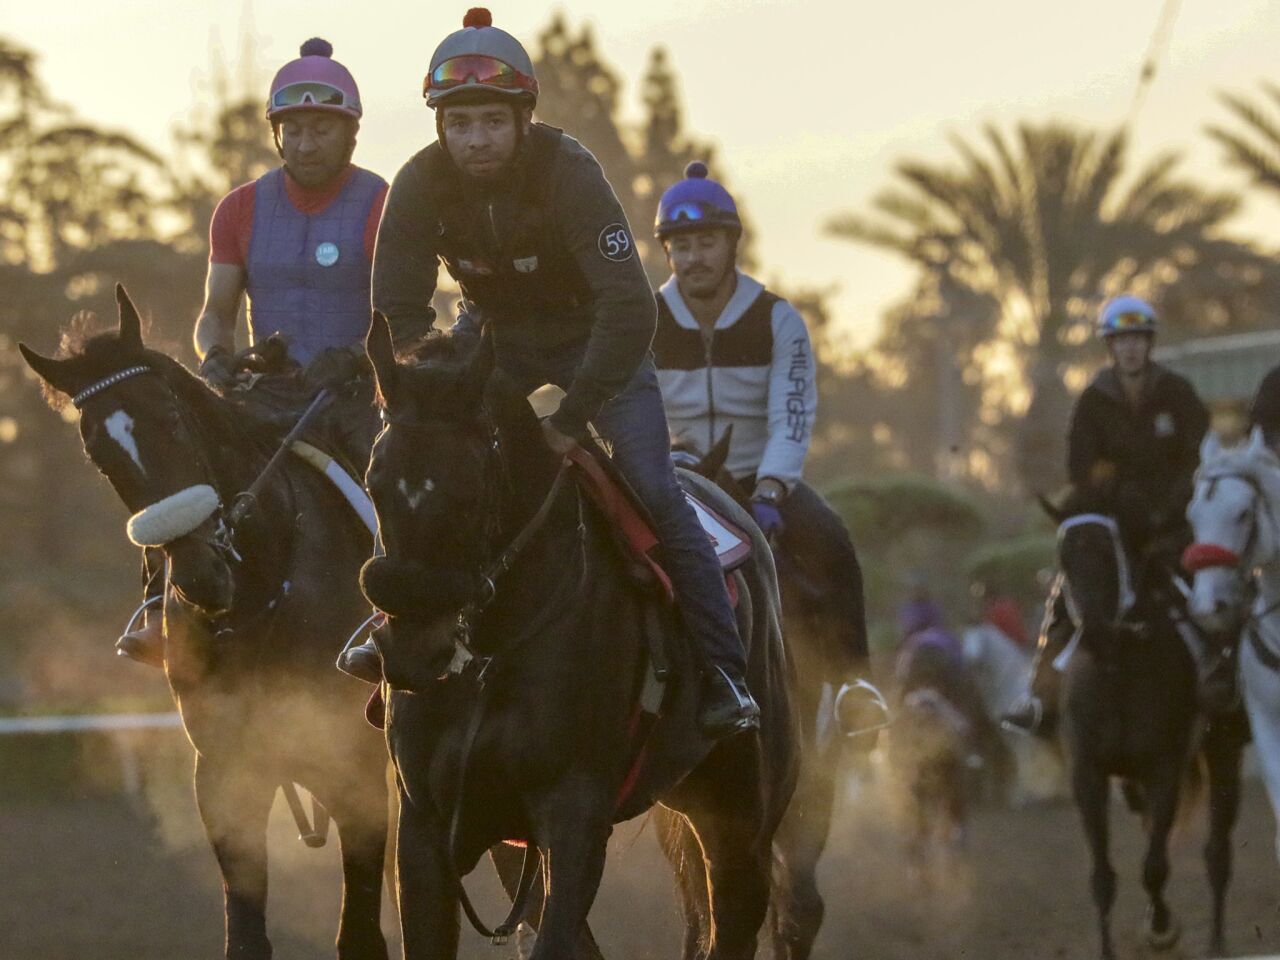 Horse racing resumes at Santa Anita